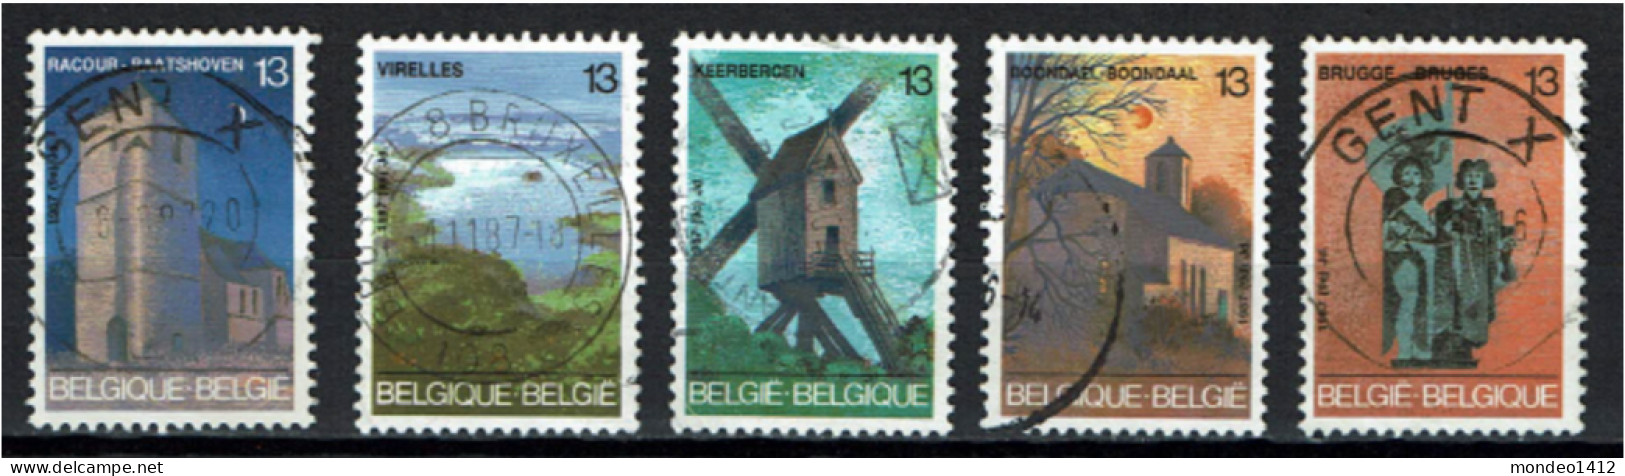 België 1987 OBP 2254/2258 - Y&T 2254/58 - Toerisme, Raatshoven, Chimay, Keerbergen, Brussel, Brugge - Gebraucht